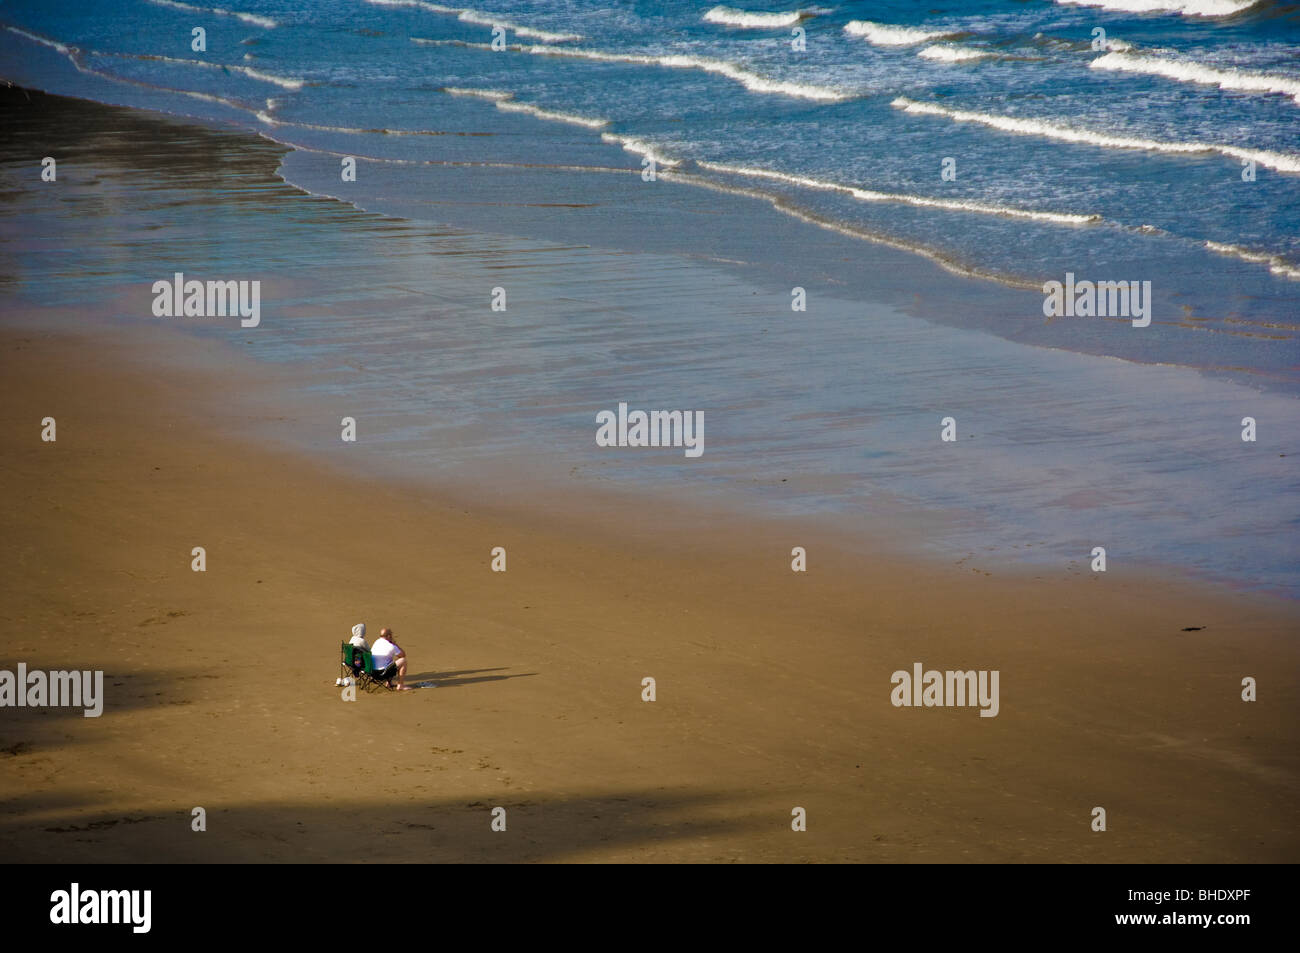 Vue arrière d'un couple adulte non identifiable, assis sur des chaises pliantes sur une plage britannique déserte, avec vue sur la mer. Banque D'Images